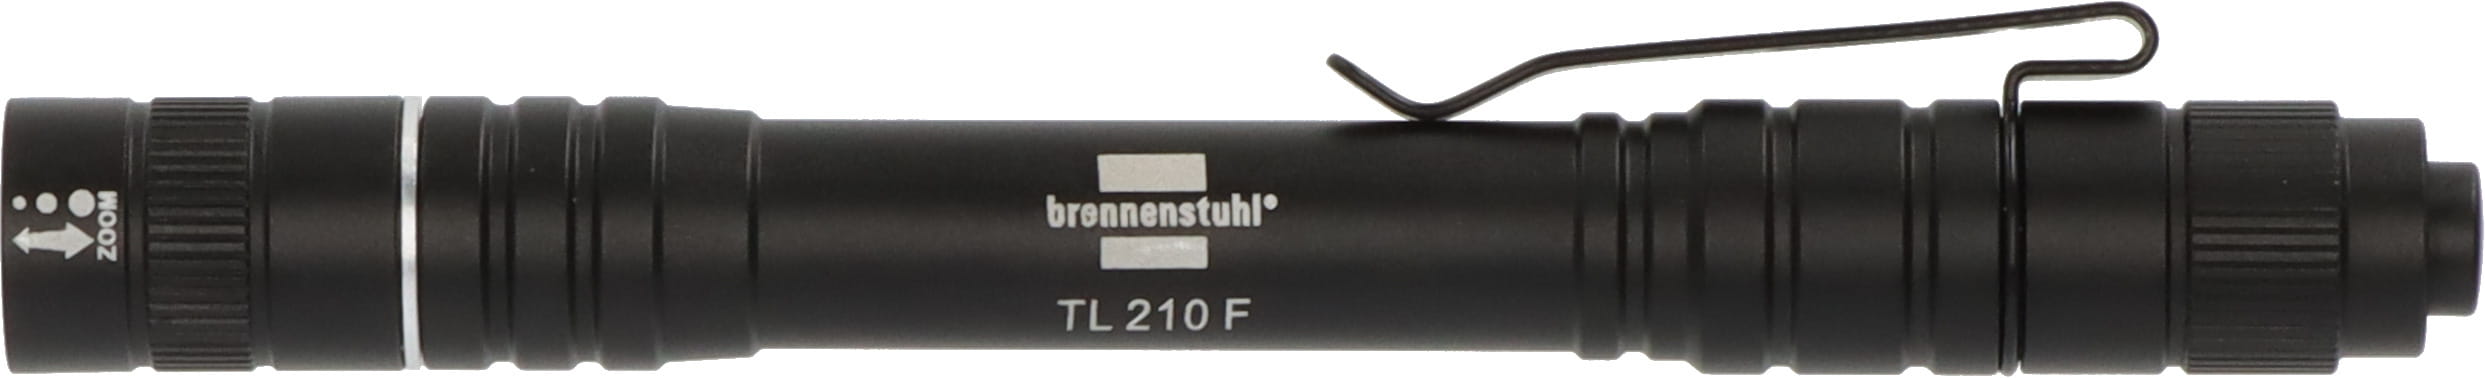 Brennenstuhl 1173750002, Taschenlampe, Schwarz, Aluminium, Tasten, IP44, LED